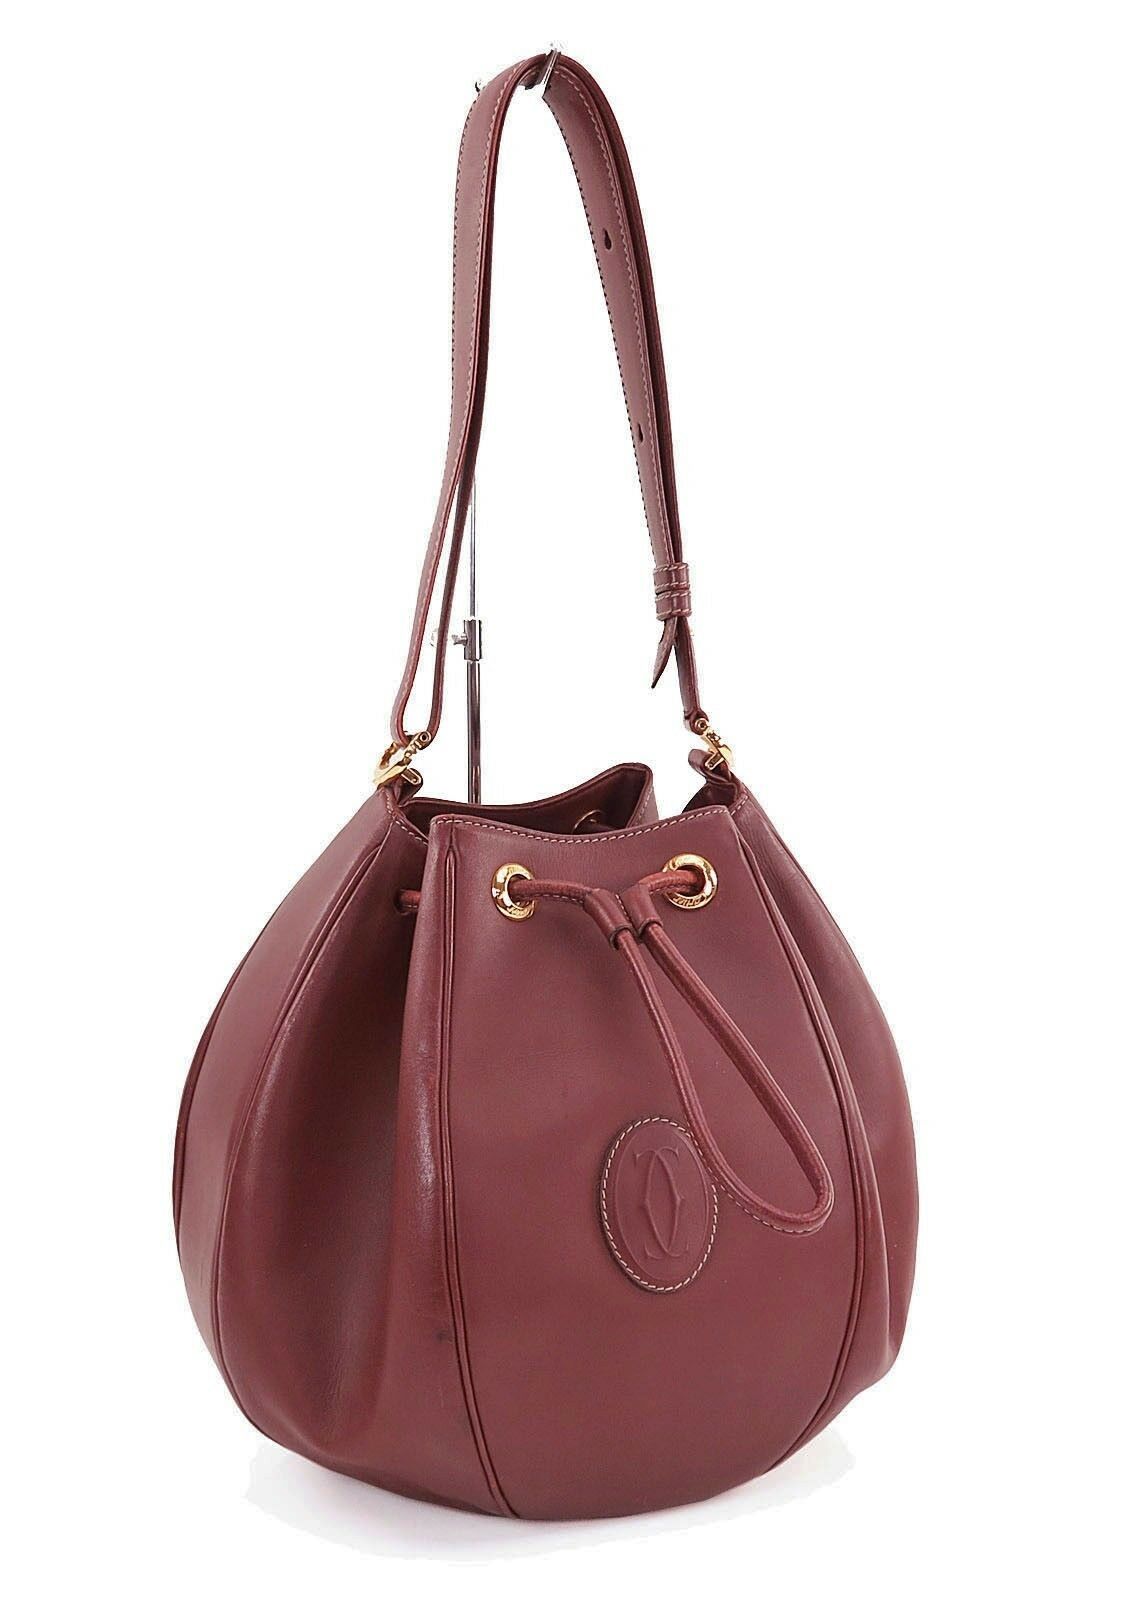 Authentic Les Must De CARTIER Burgundy Leather Shoulder Bag Purse